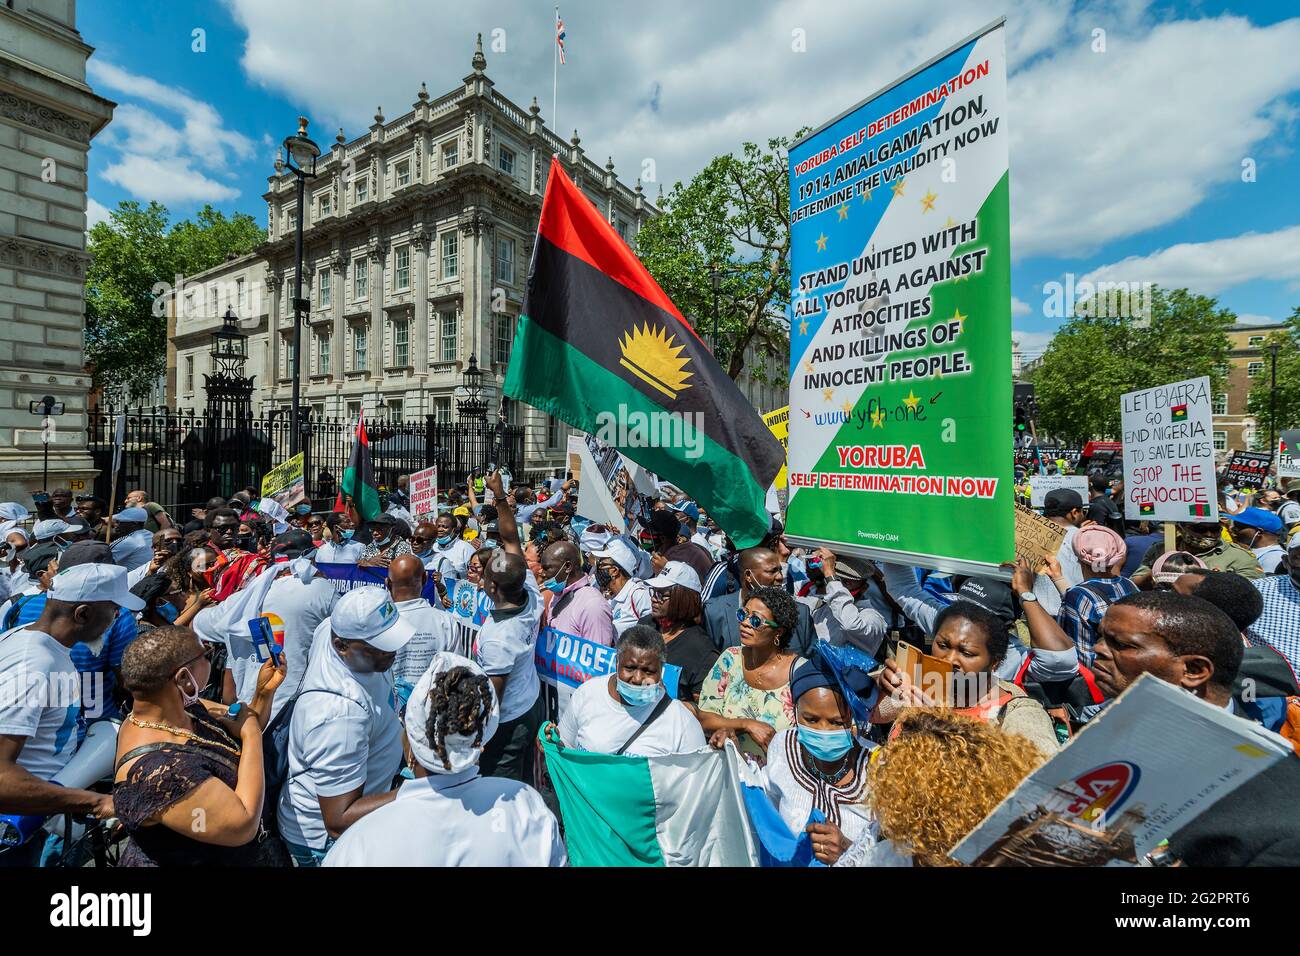 Londres, Royaume-Uni. 12 juin 2021. Proteste devant Downing Street en faveur de l'autodétermination de Yoruba au Nigeria. Crédit : Guy Bell/Alay Live News Banque D'Images